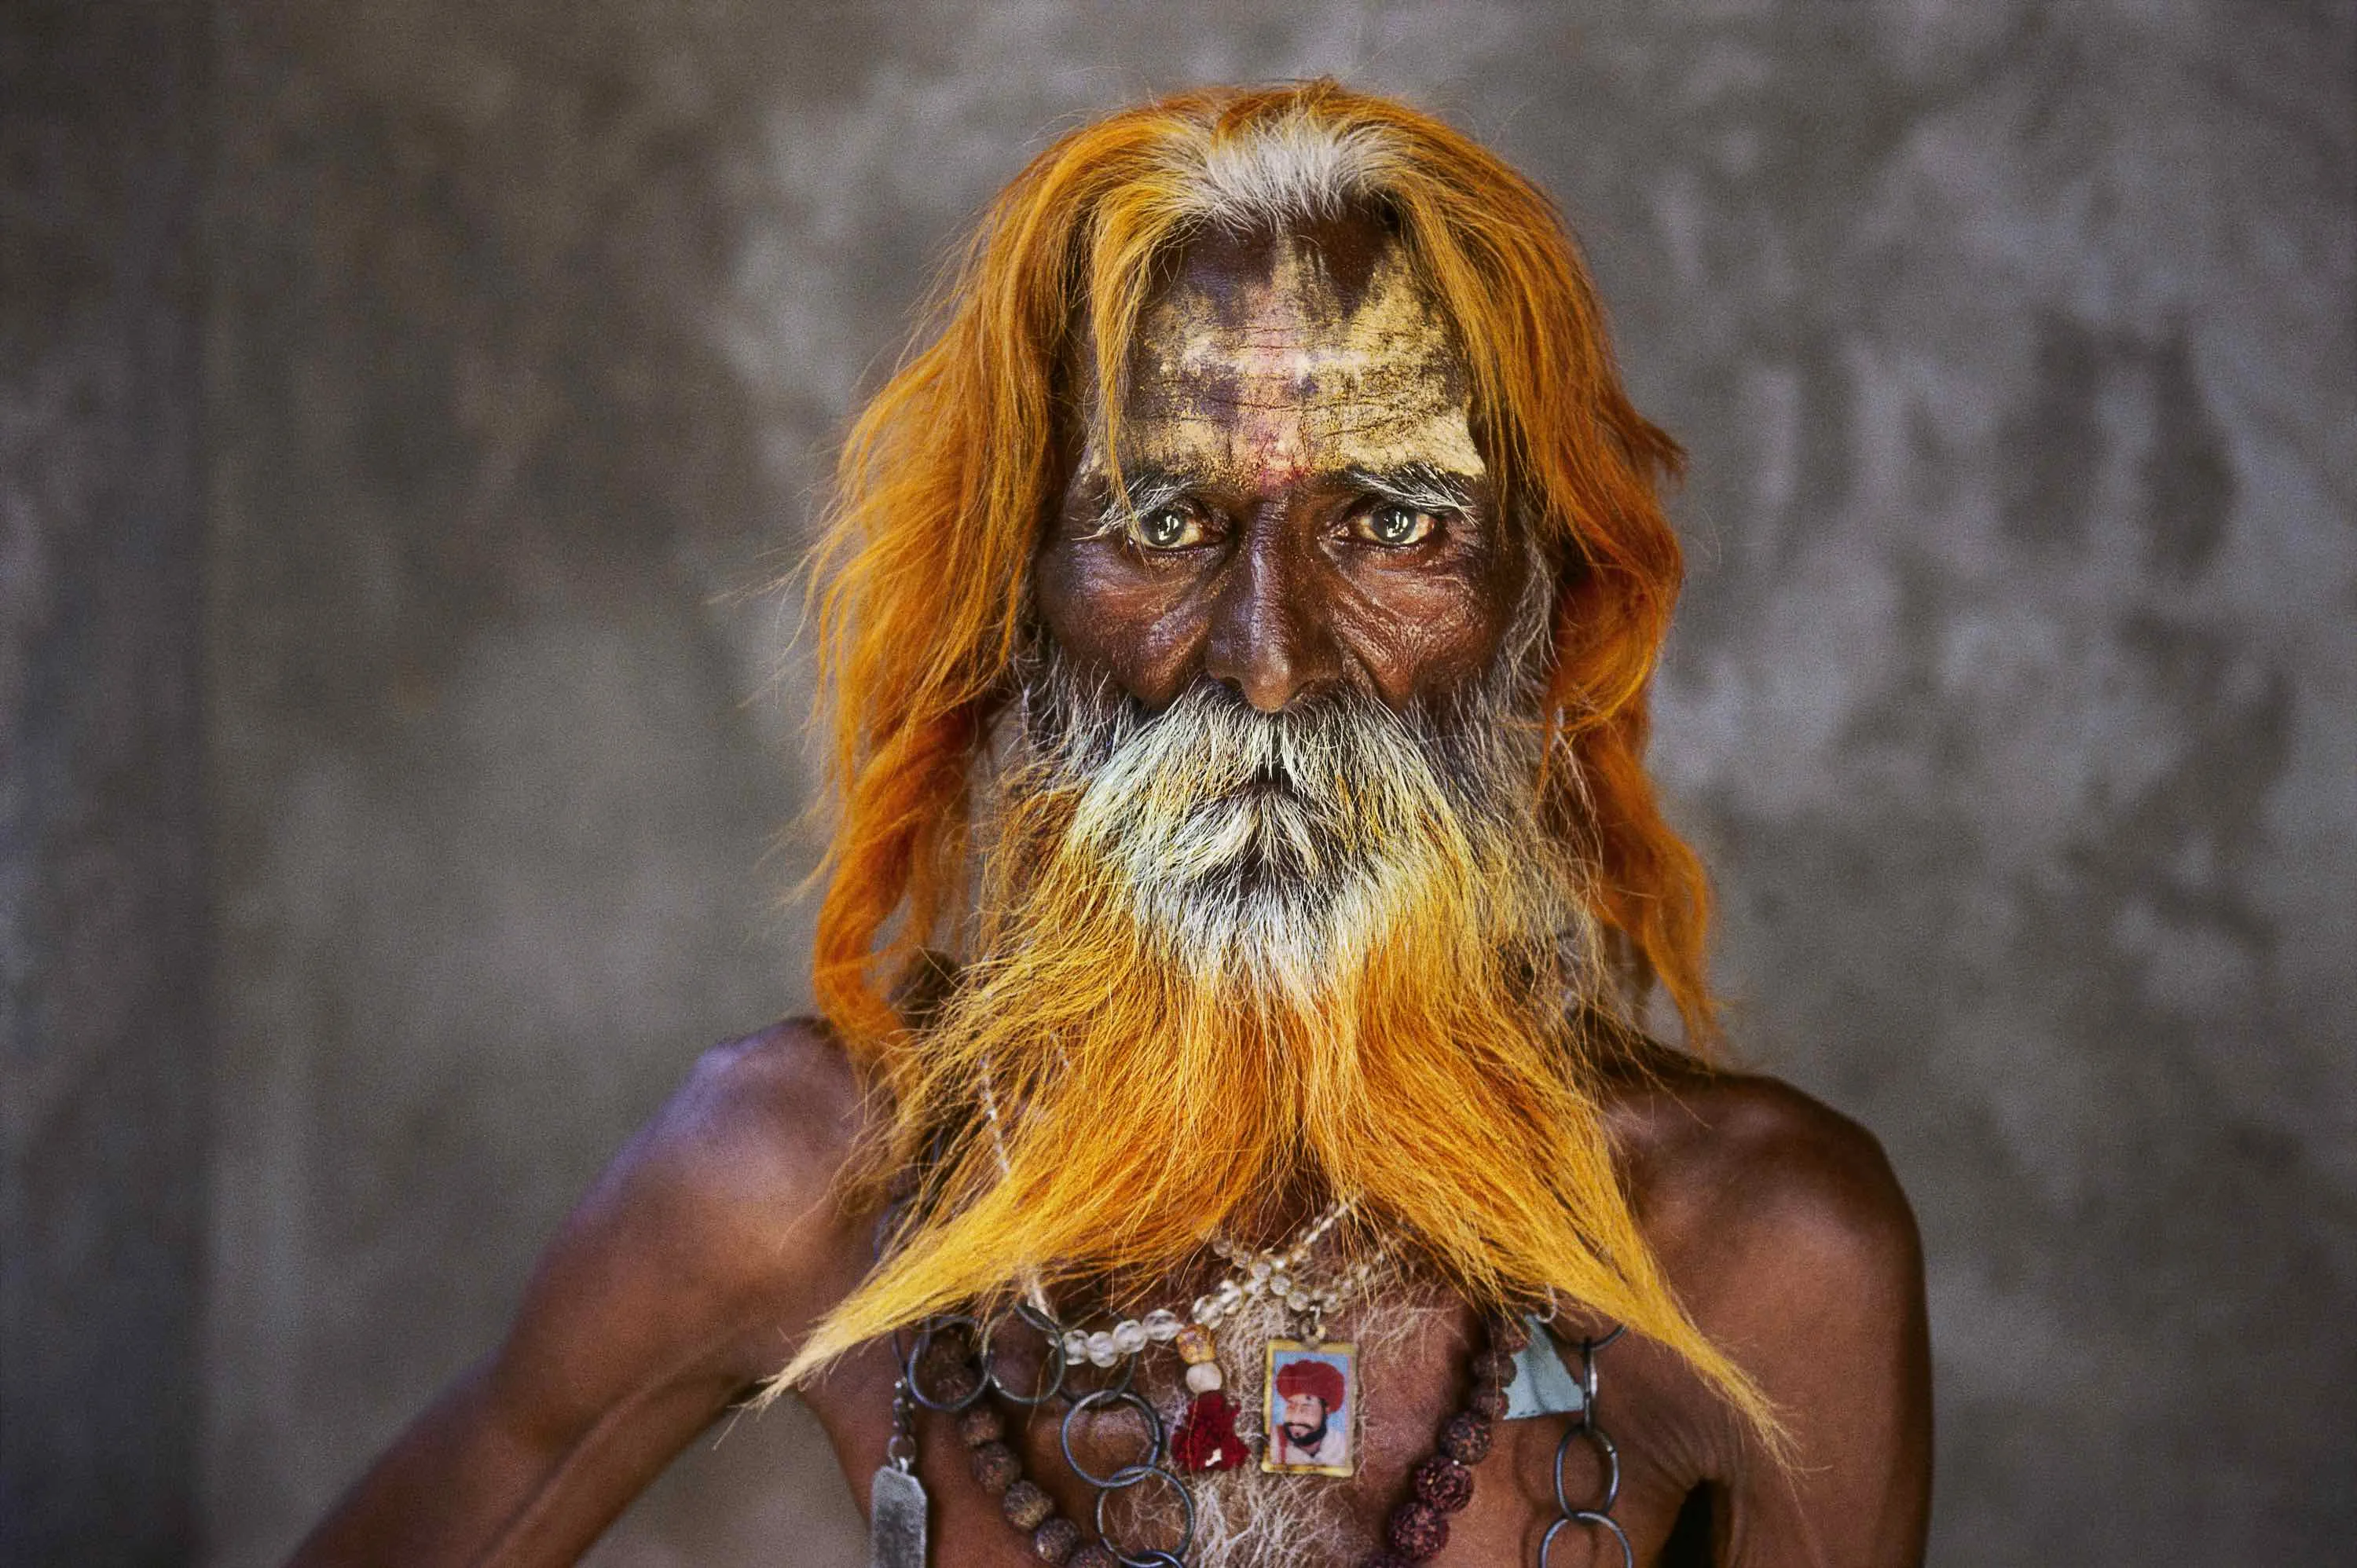 Самый необычный народ. Стив МАККАРРИ. Стив МАККАРРИ фотограф. Стив МАККАРРИ Индия. Стив МАККАРРИ (Steve MCCURRY) фотограф.